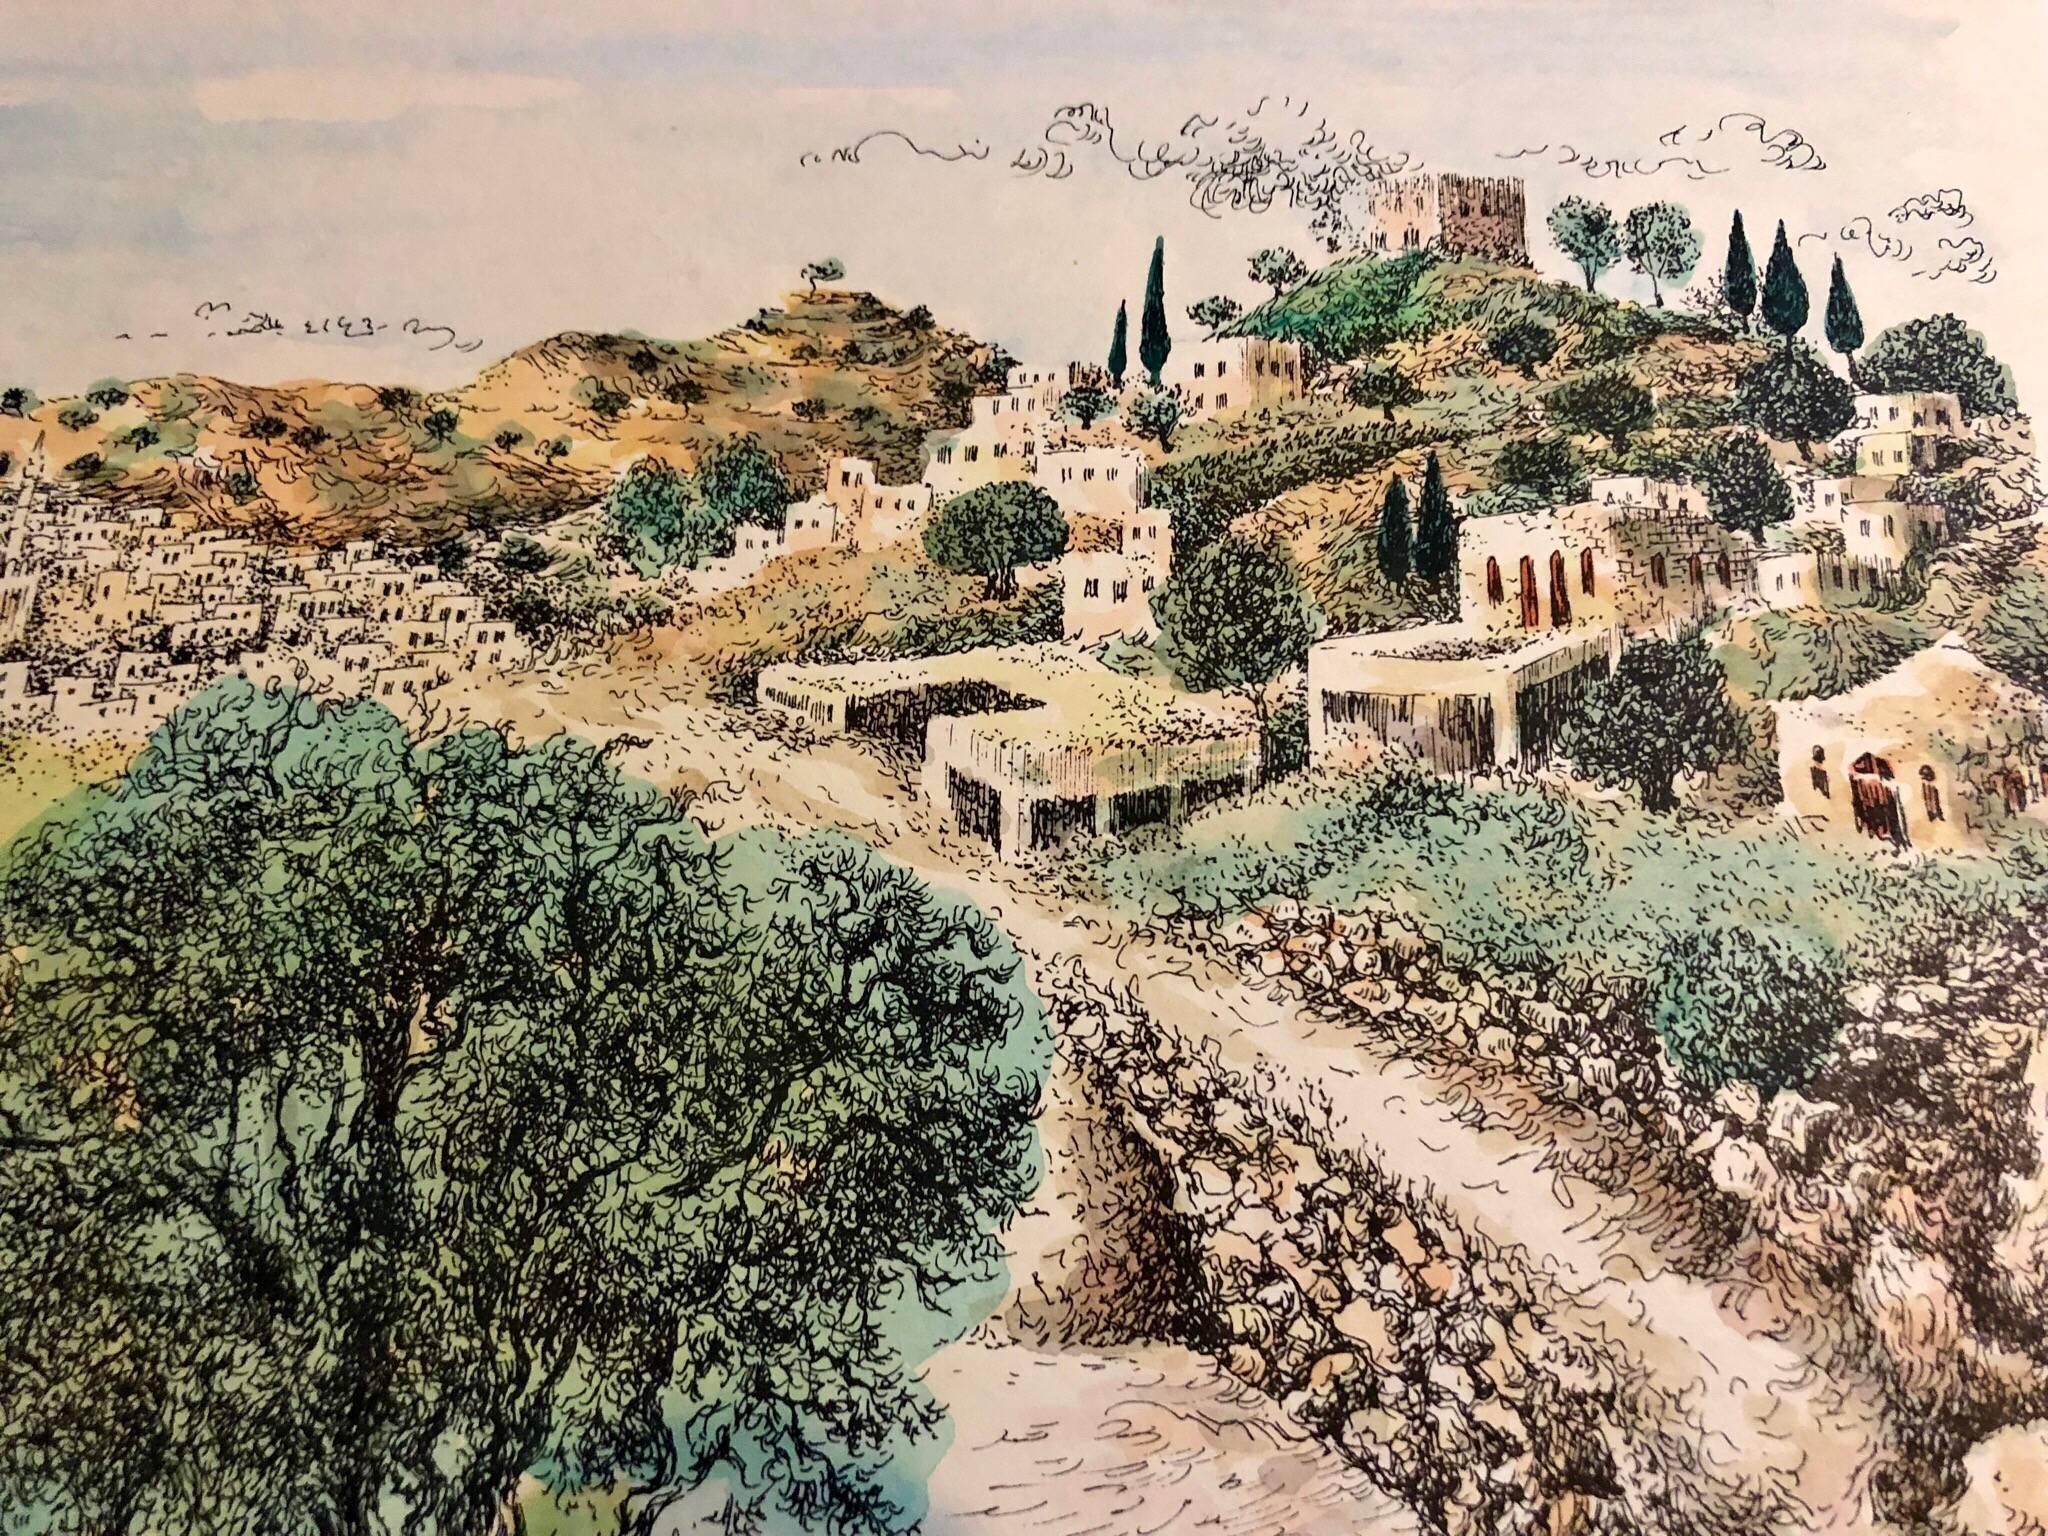 Baruch Nachshon wurde 1939 im Mandatsgebiet Palästina in der Stadt Haifa geboren.
Nachshon begann in seiner frühen Kindheit zu malen und entwickelte seine Beziehung zur Kunst und zu Künstlern während seiner gesamten Jugend. Während seines